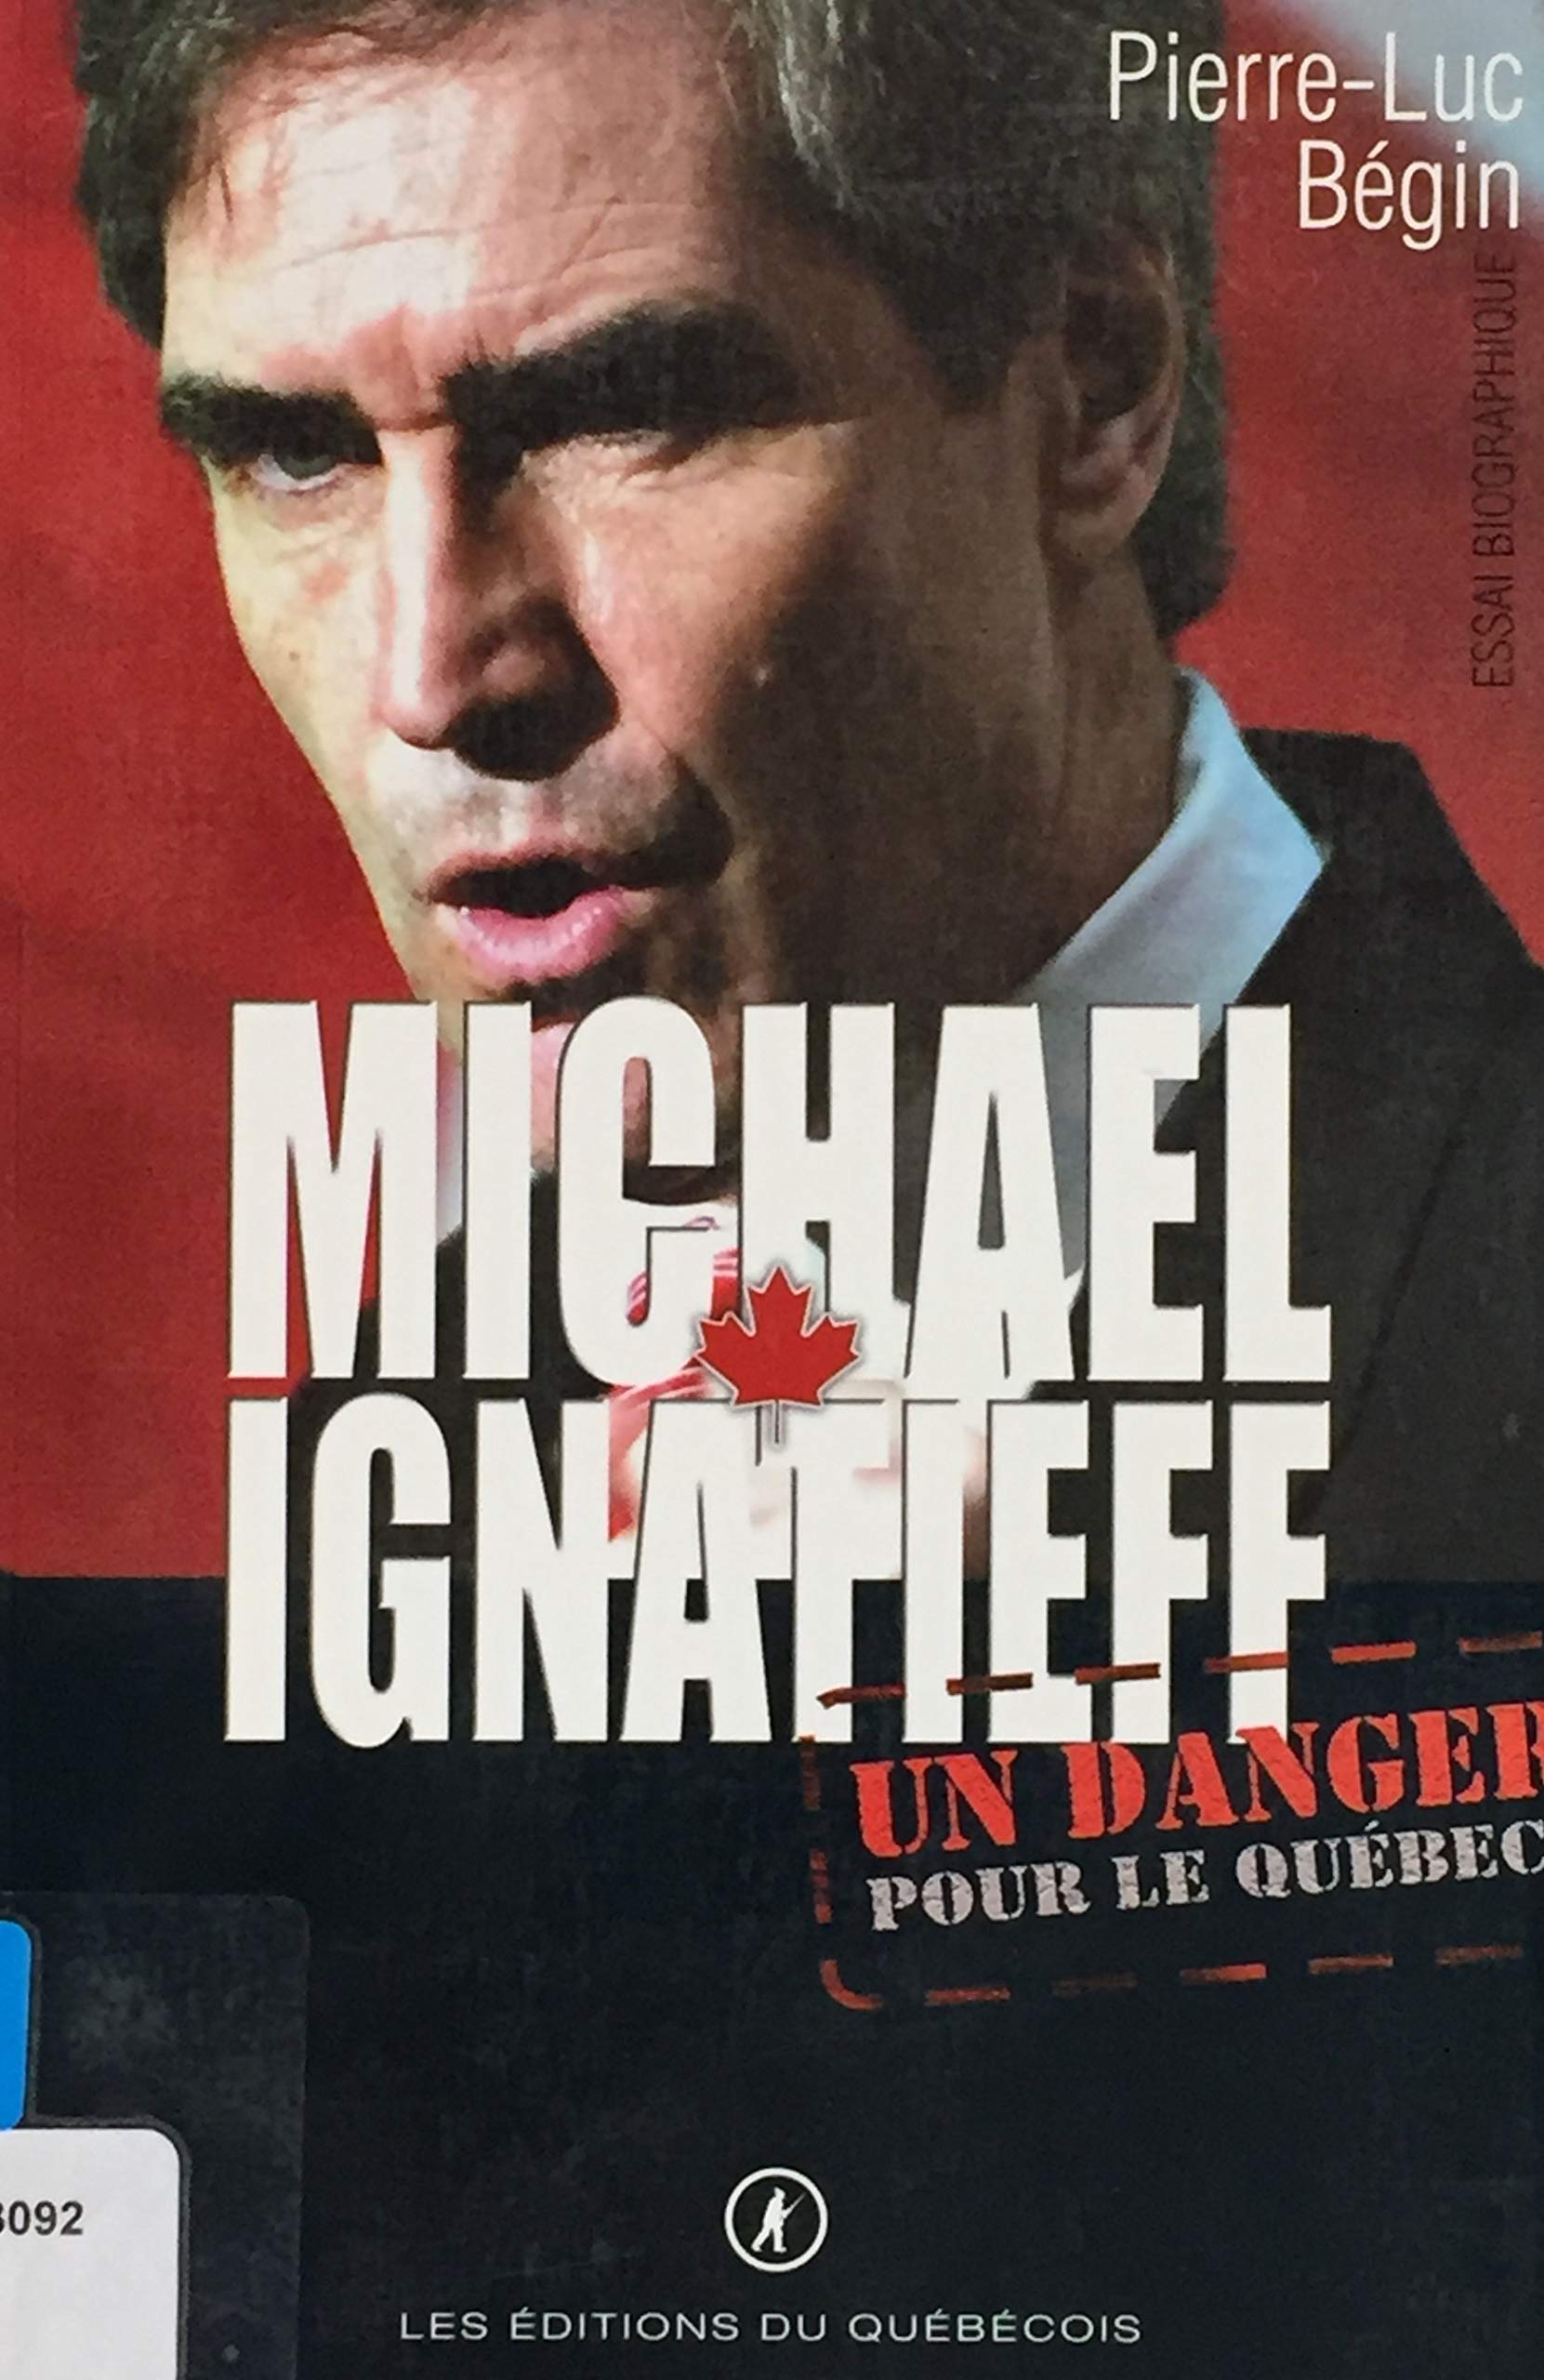 Livre ISBN 2923365089 Michael Ignatieff: un danger pour le Québec (Pierre-Luc Bégin)